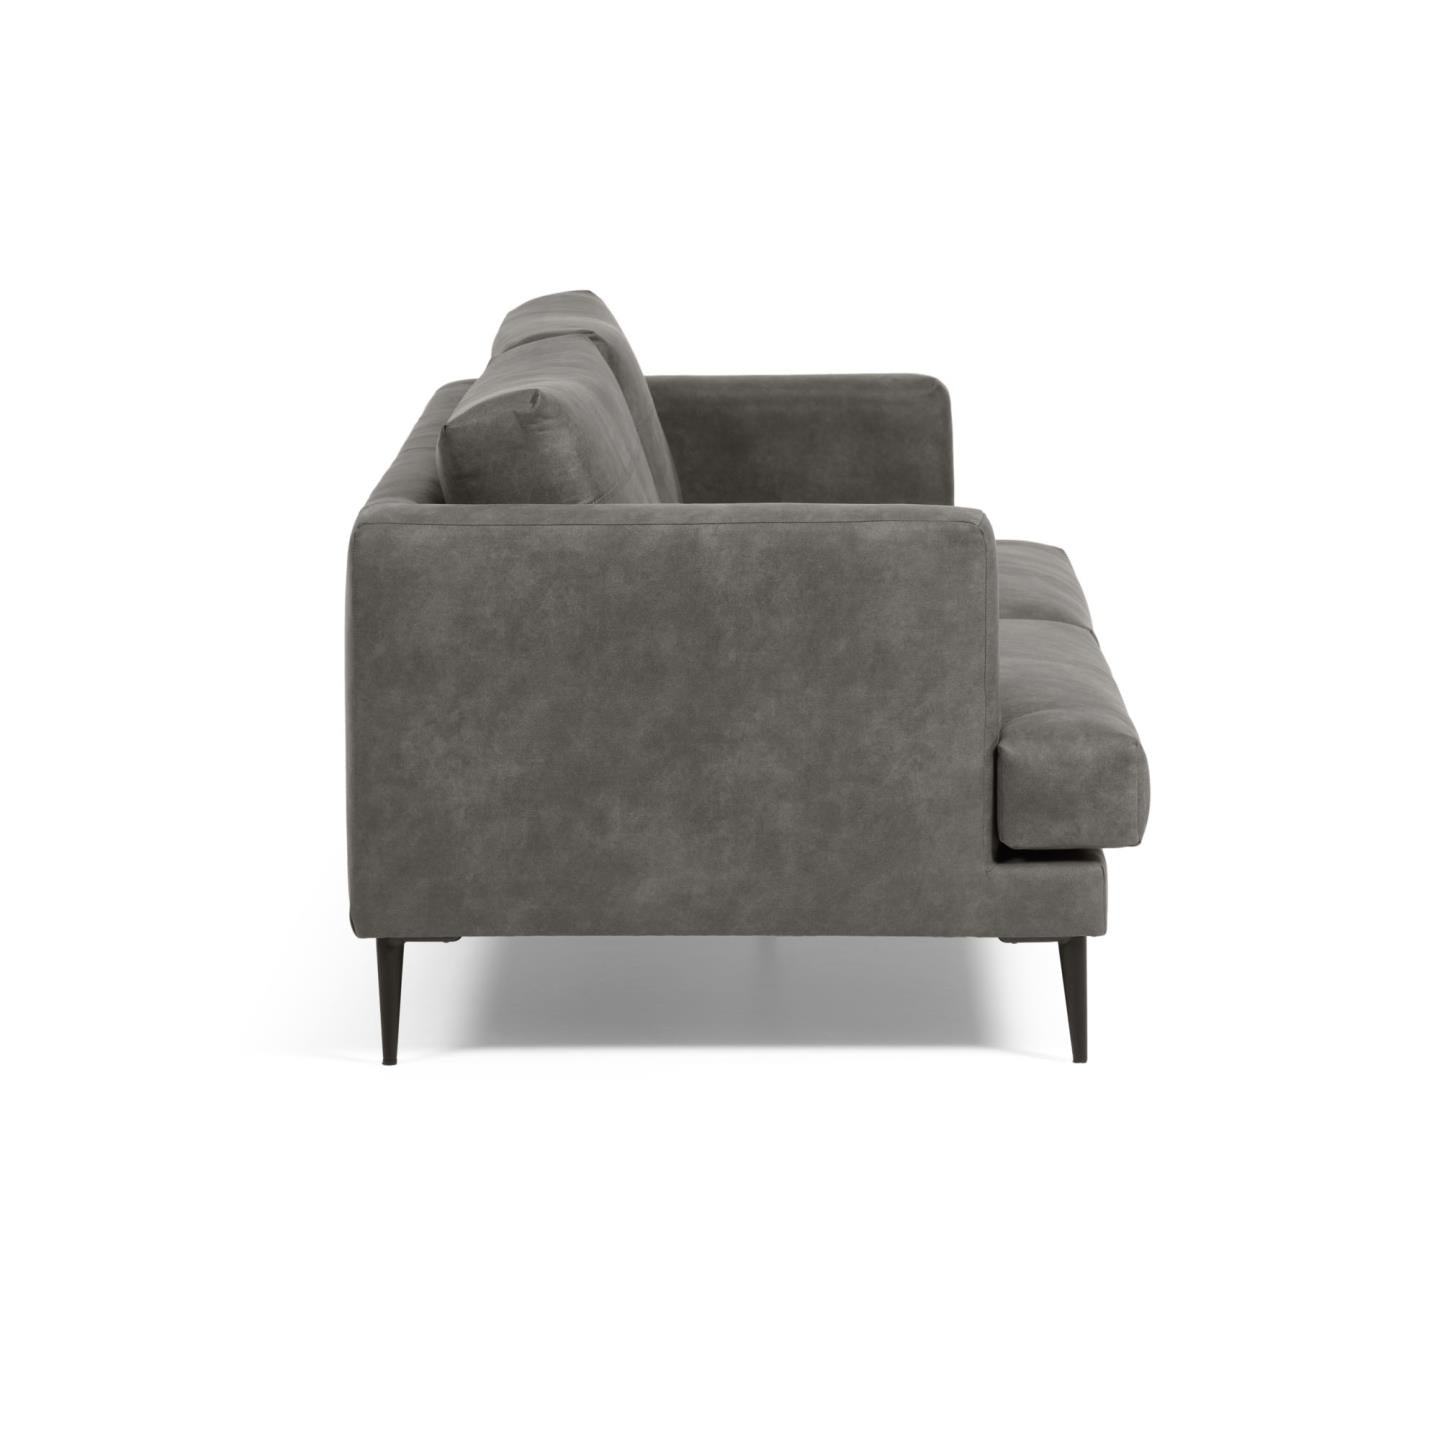 Tanya 2 seater sofa upholstered in dark grey 183 cm